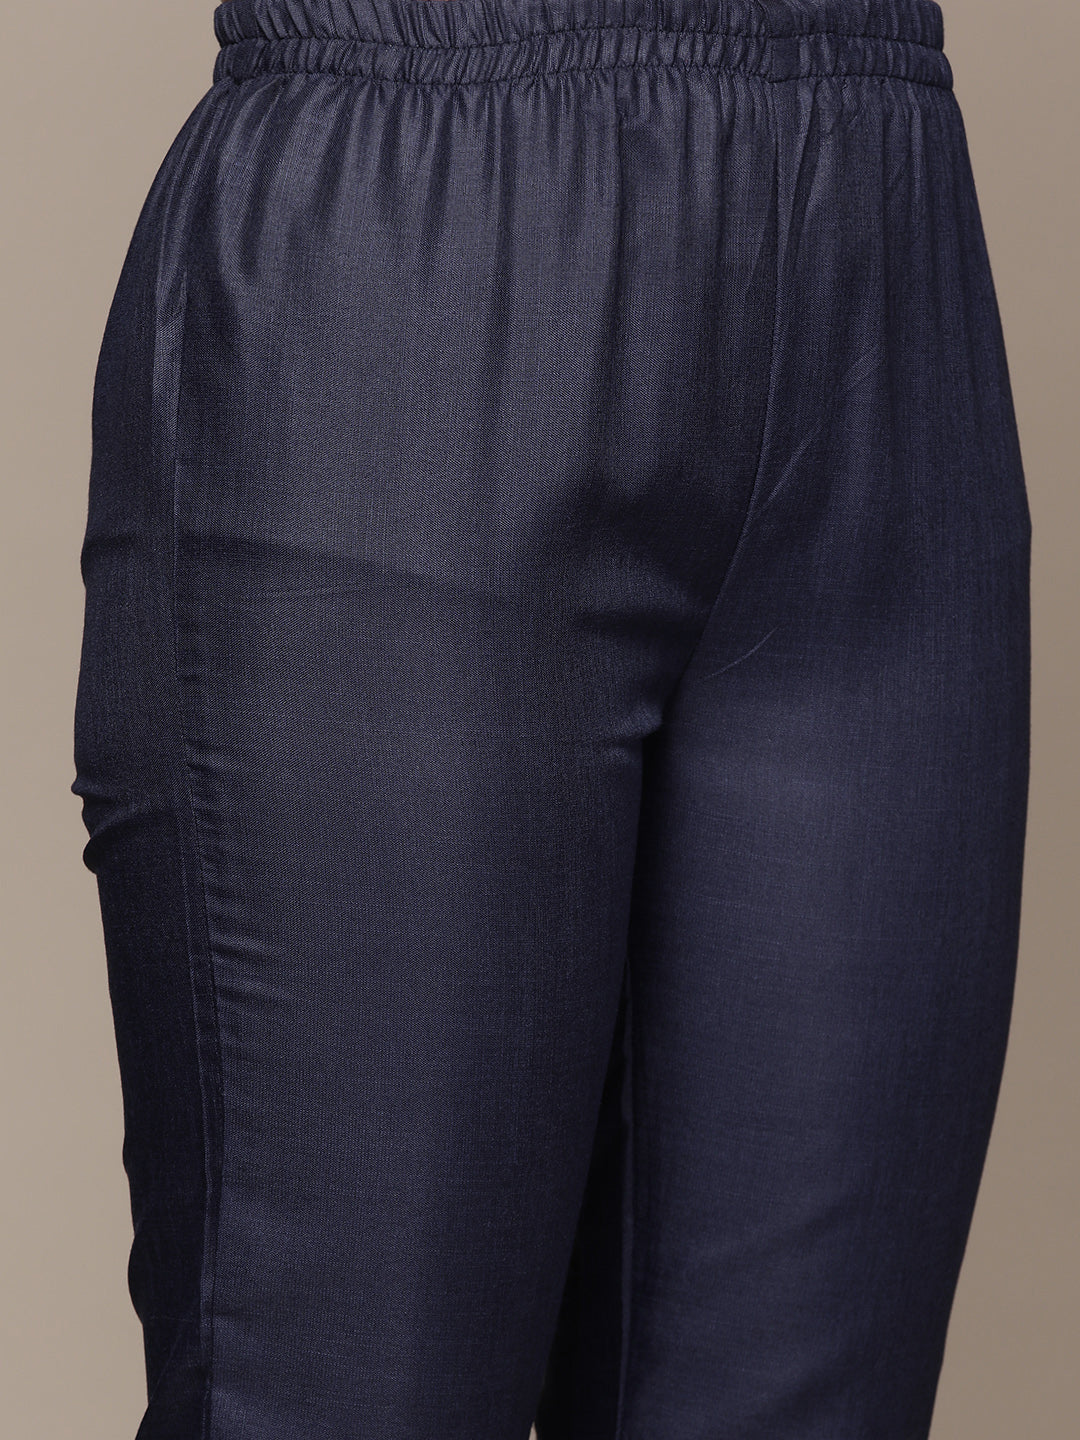 Anubhutee Women's Blue Cotton Kantha Kurta Set with Trousers